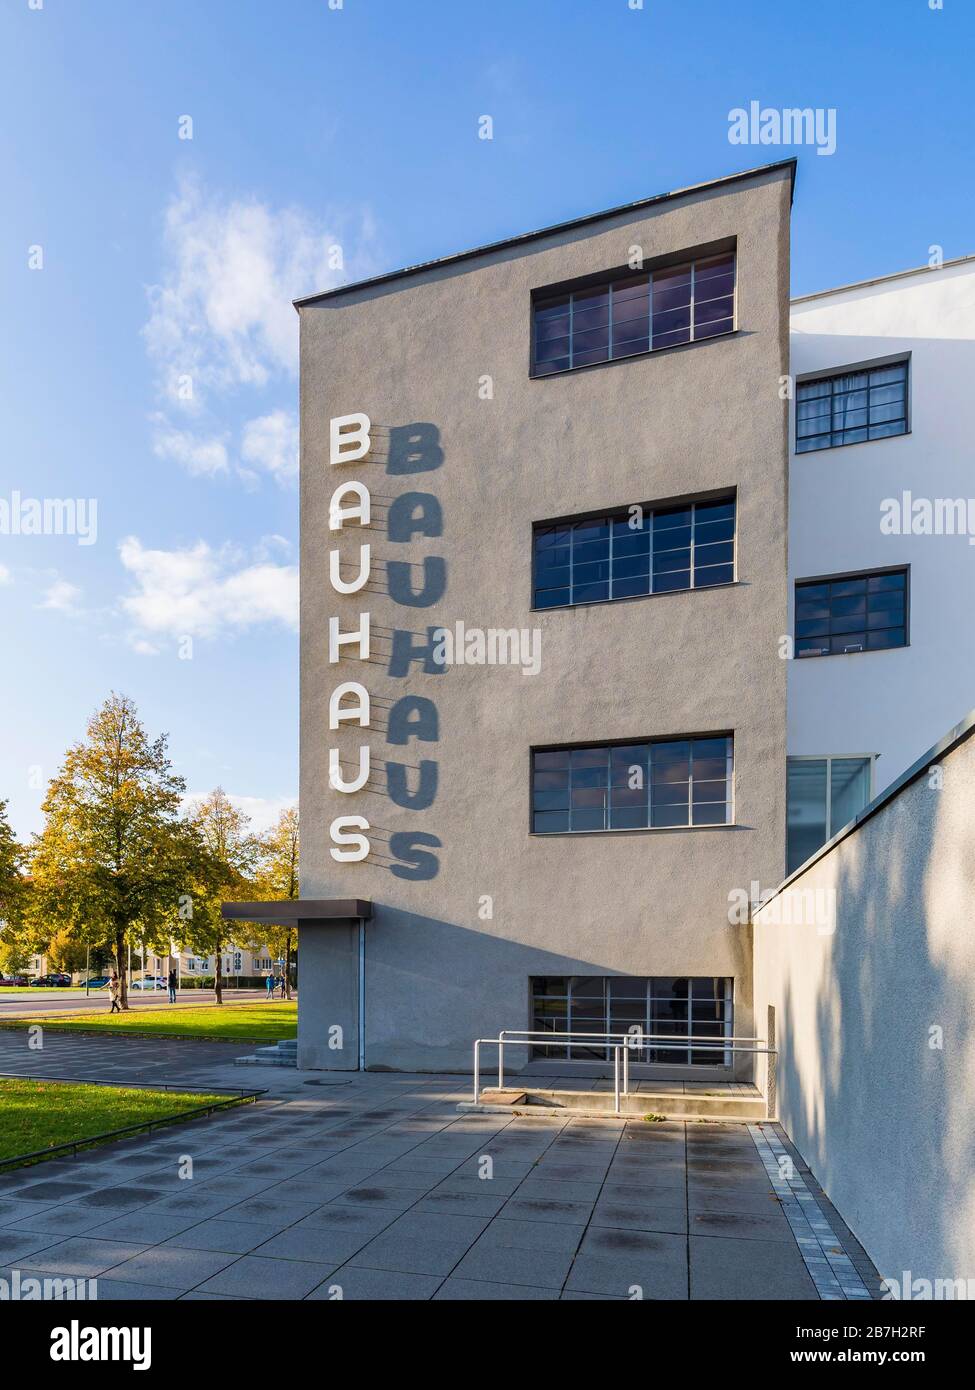 Bauhaus Dessau, Bauhaus, université, Dessau-Rosslau, Saxe-Anhalt, Allemagne Banque D'Images